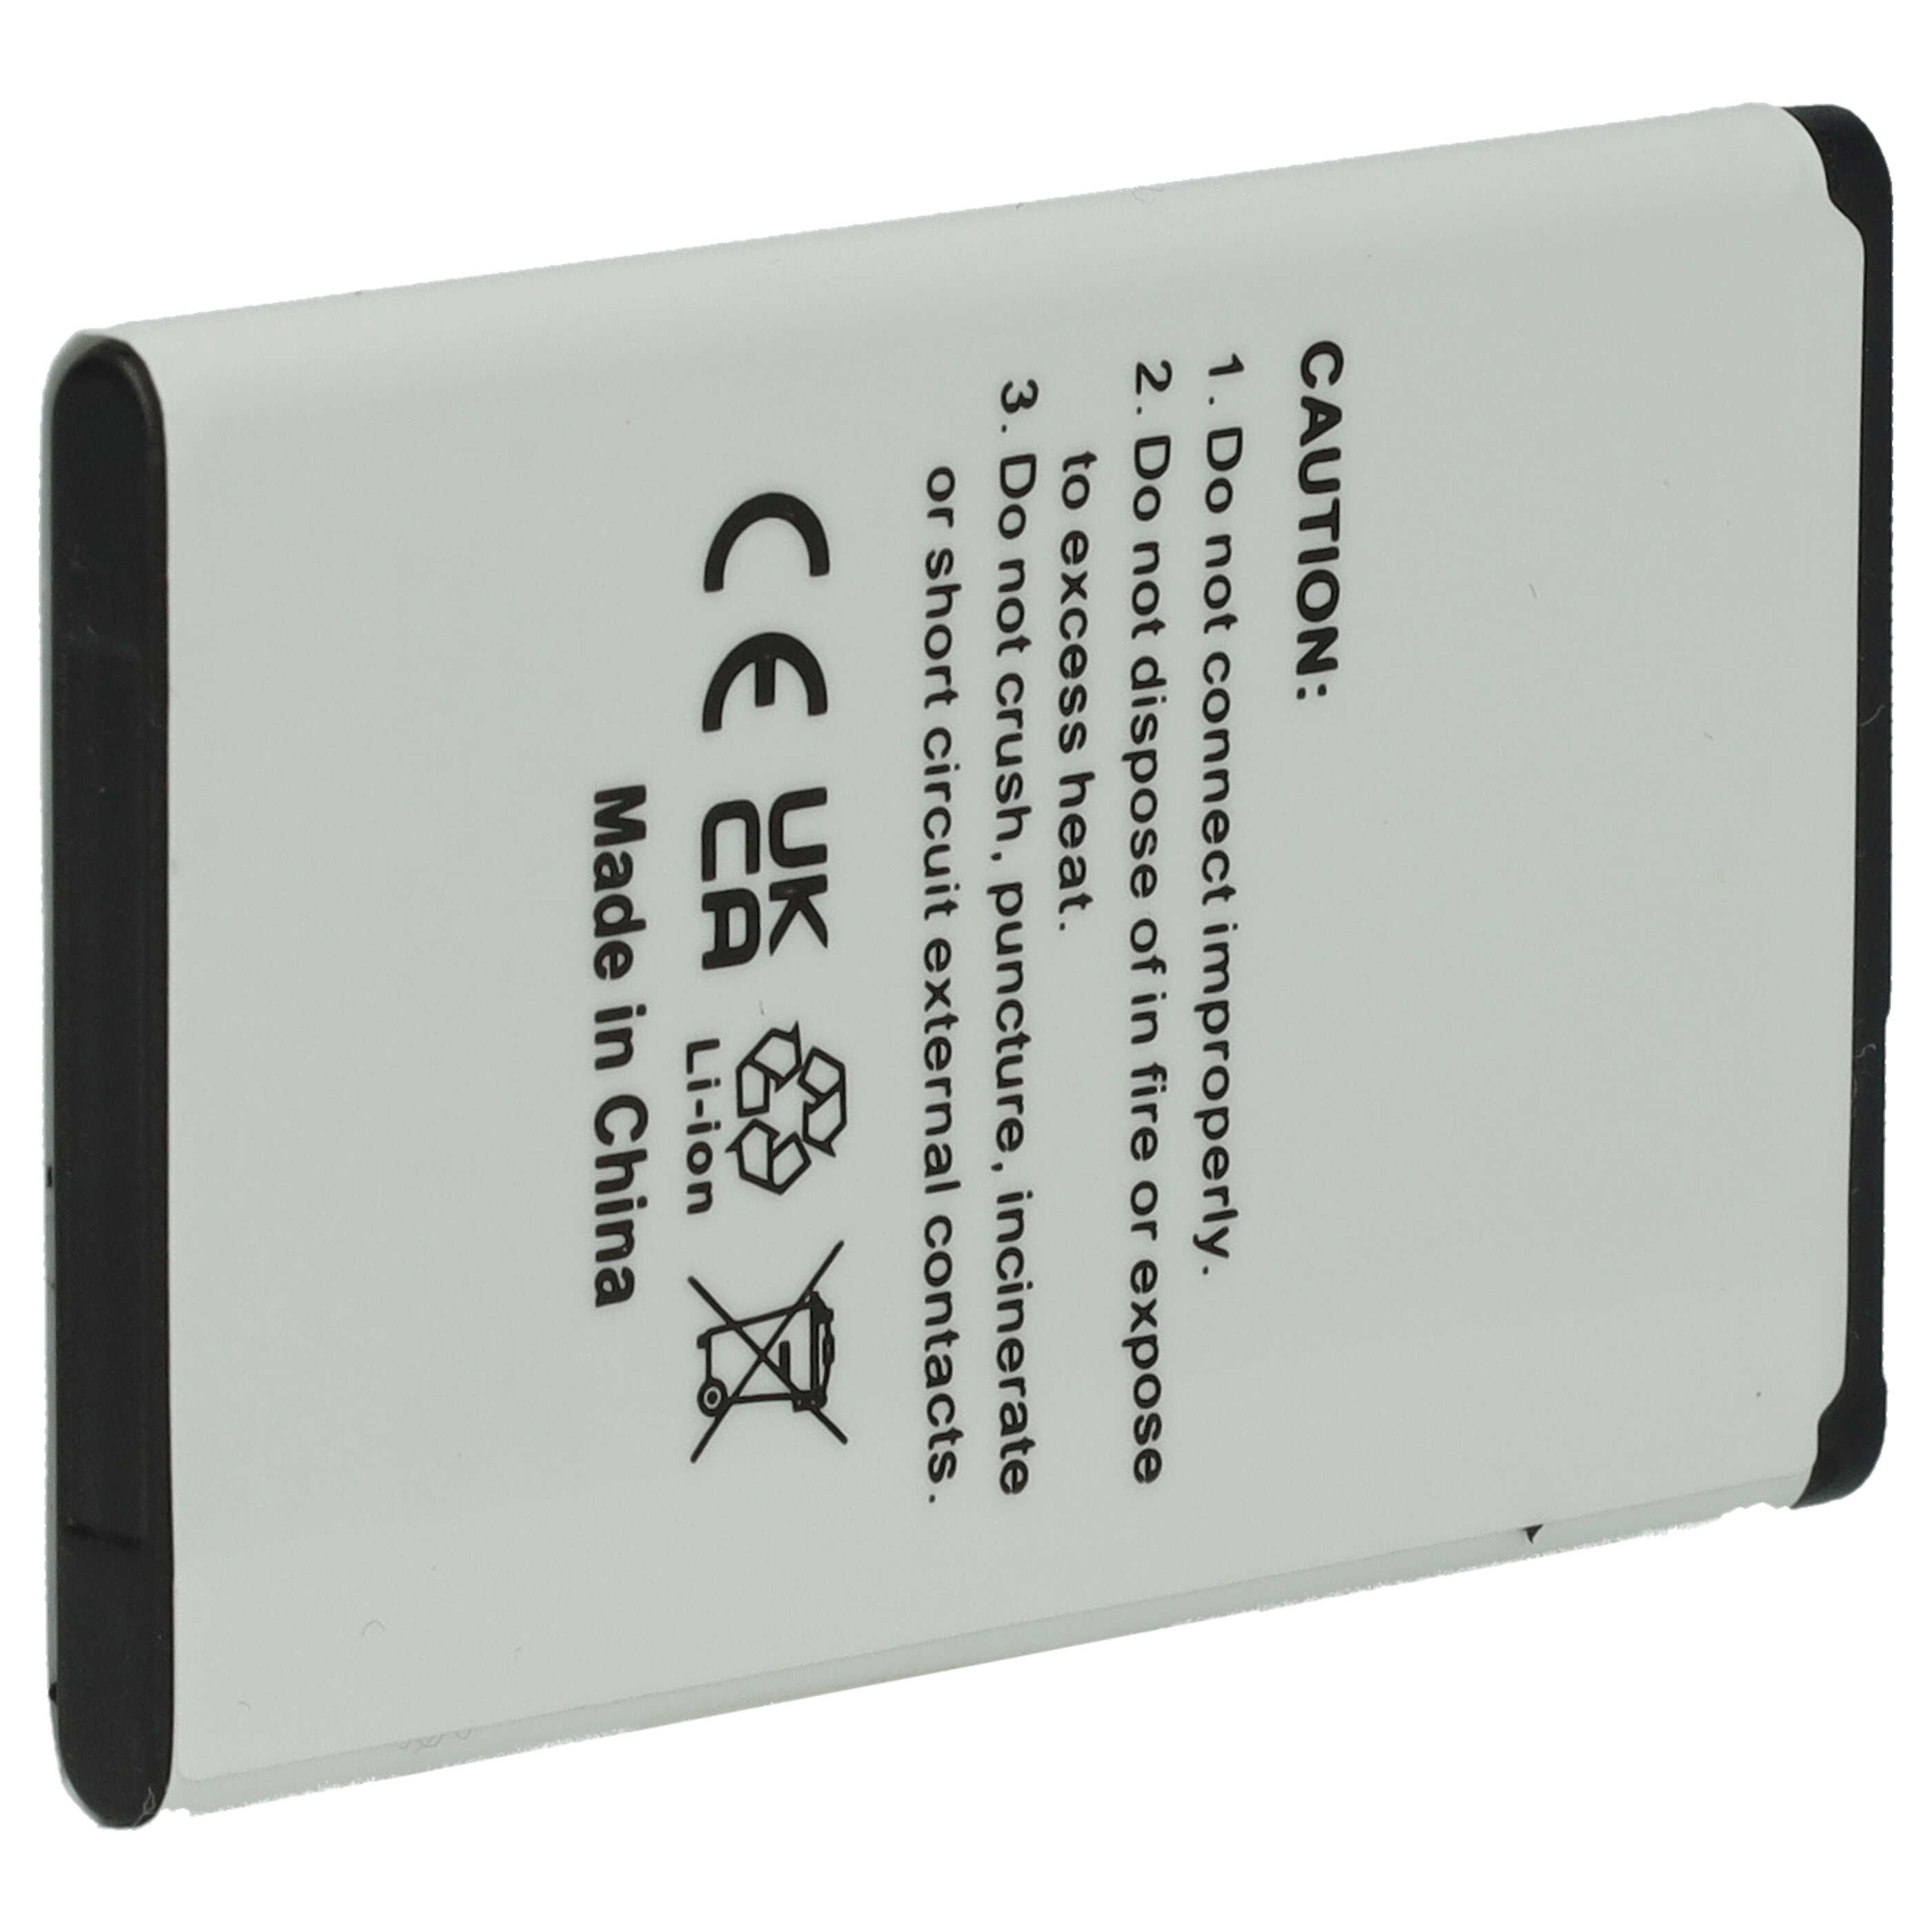 Batterie remplace Gigaset V30145-K1310-X470 pour téléphone portable senior - 800mAh, 3,7V, Li-ion